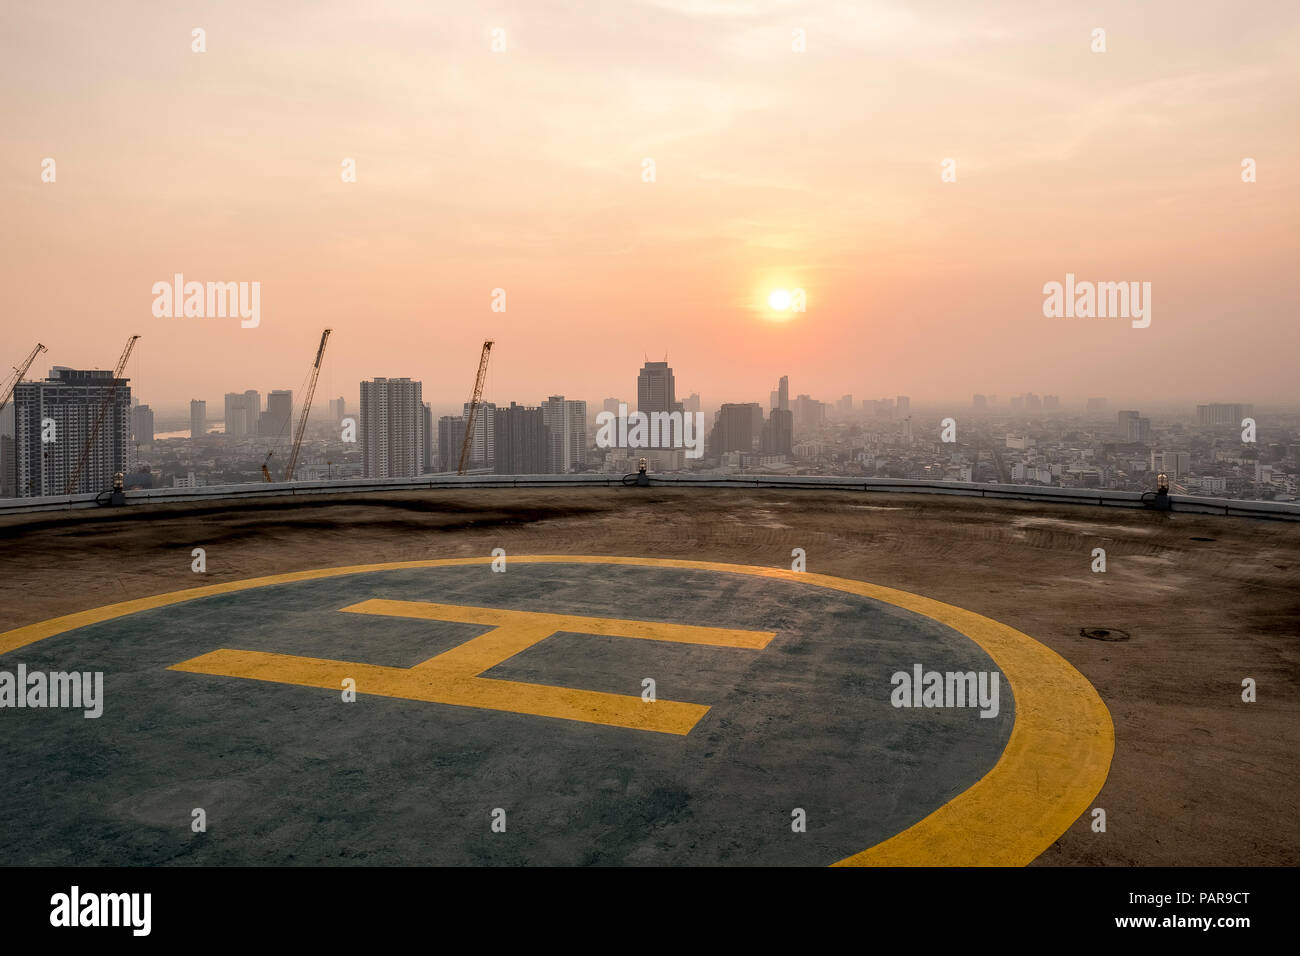 Thailand, Bangkok, helipad on roof top at sunrise Stock Photo